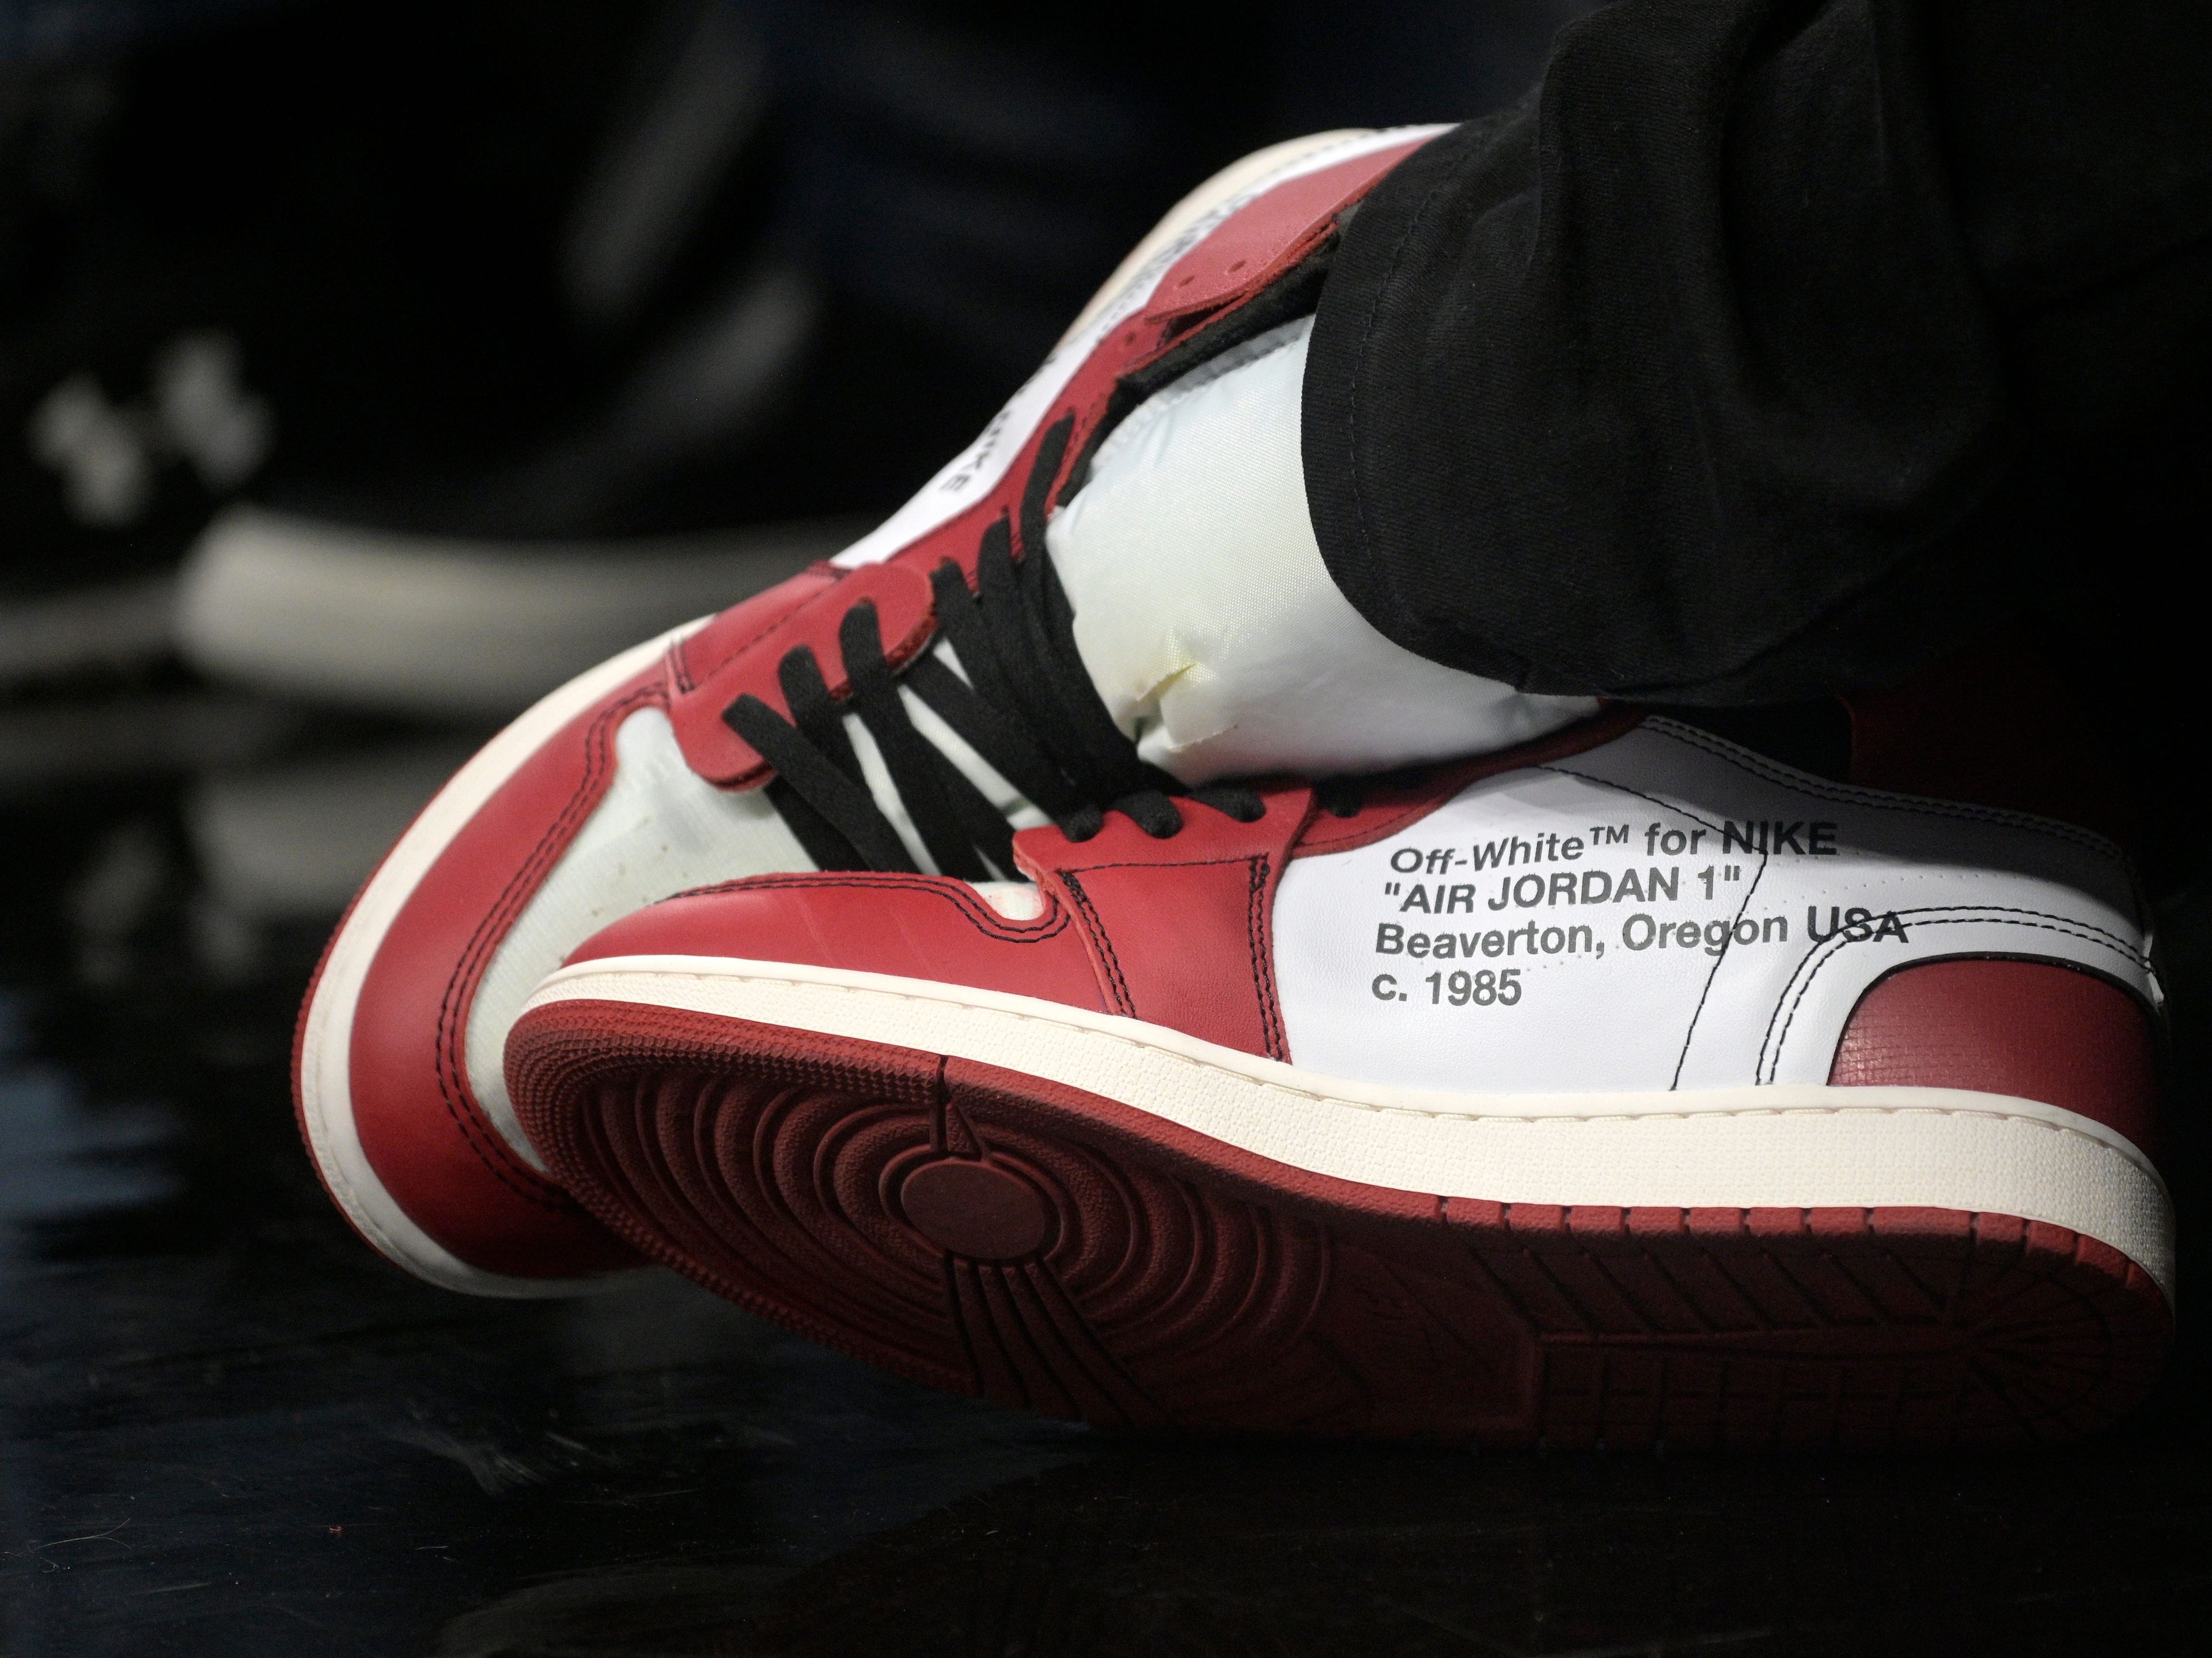 Asombro tornillo invernadero La historia de las Air Jordan 1 de Nike, las zapatillas más cotizadas |  Business Insider España